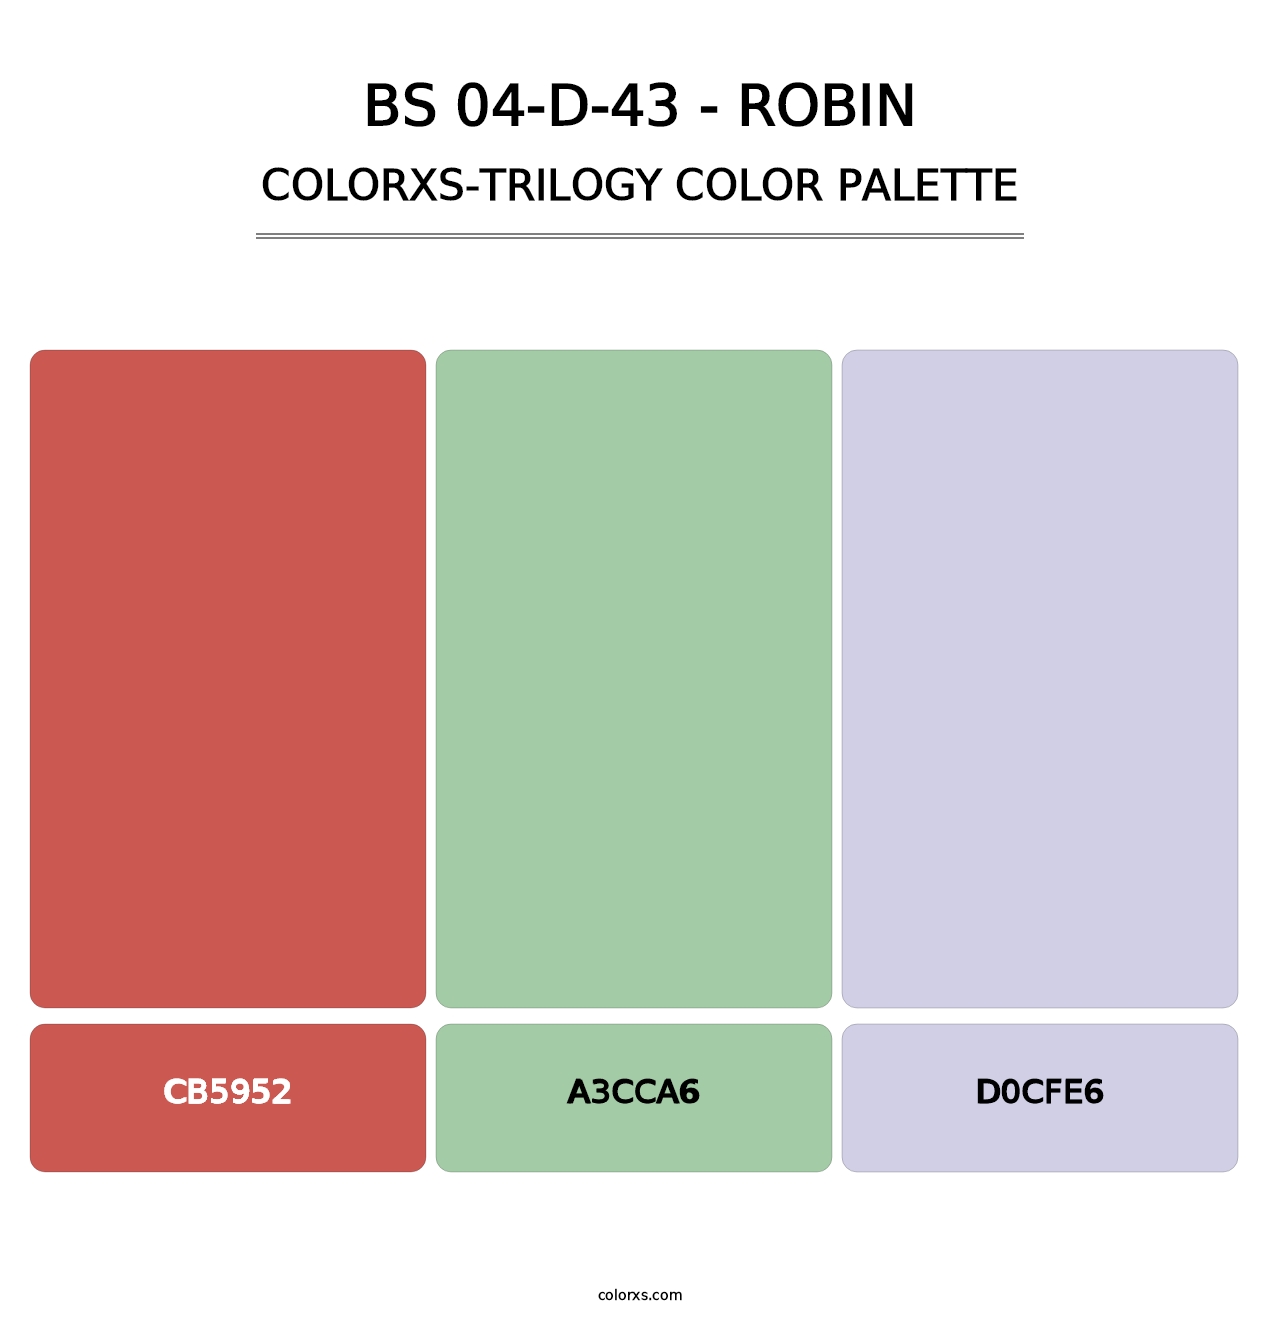 BS 04-D-43 - Robin - Colorxs Trilogy Palette